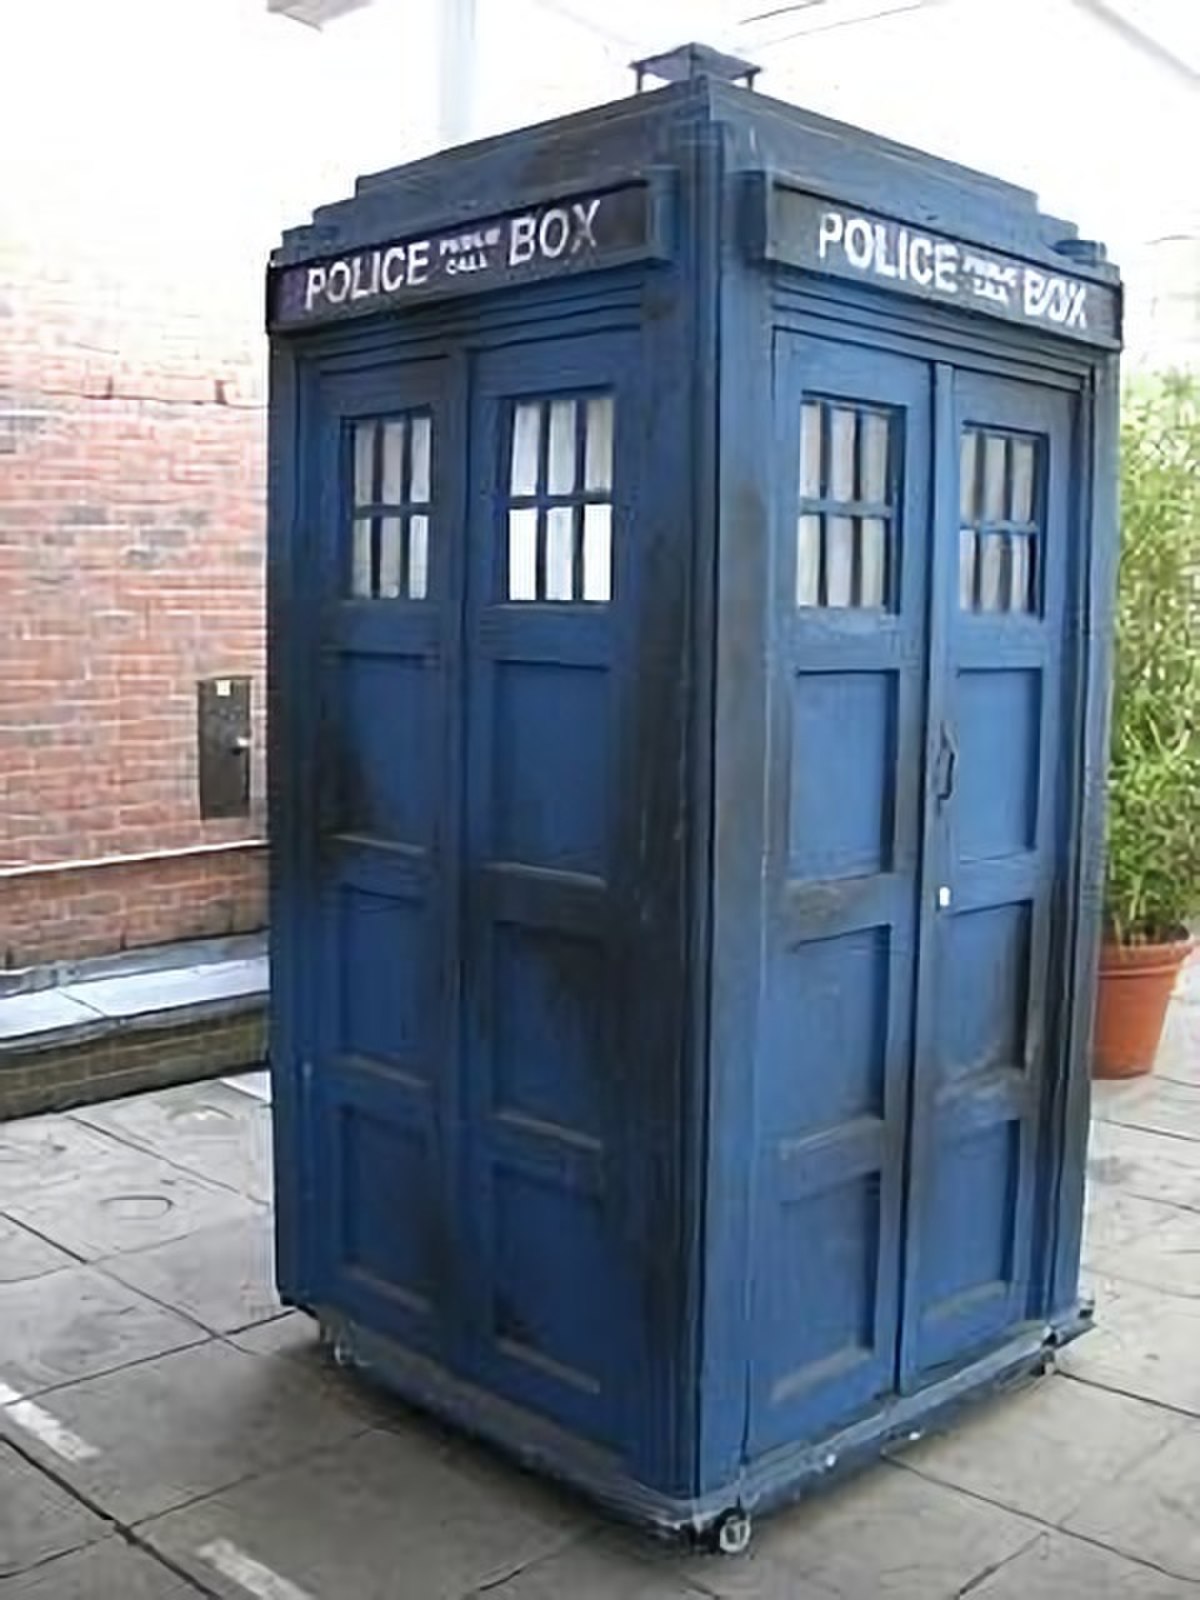 image du Tardis, véhicule du docteur qui a la forme d'une cabine anglaise de police, de couleur bleue